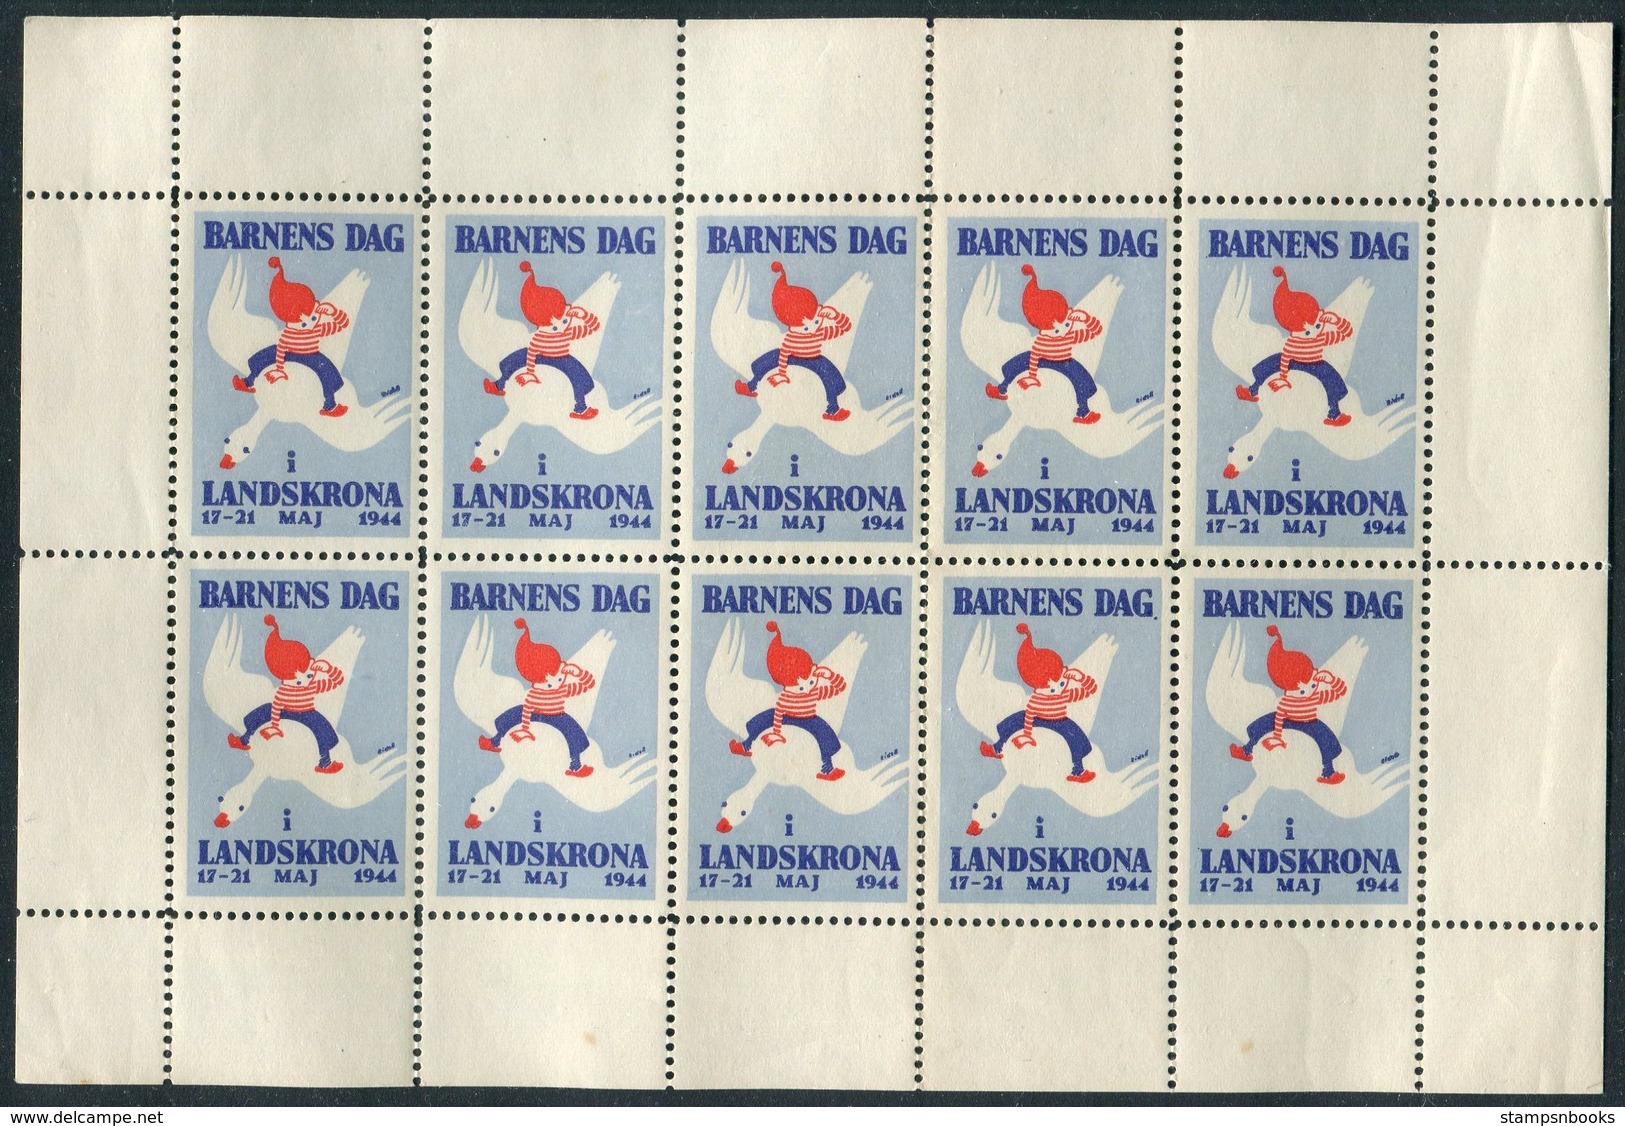 1944 Sweden Barnens Dag Landskrona Sheet Of 10 Charity Seals - Unused Stamps